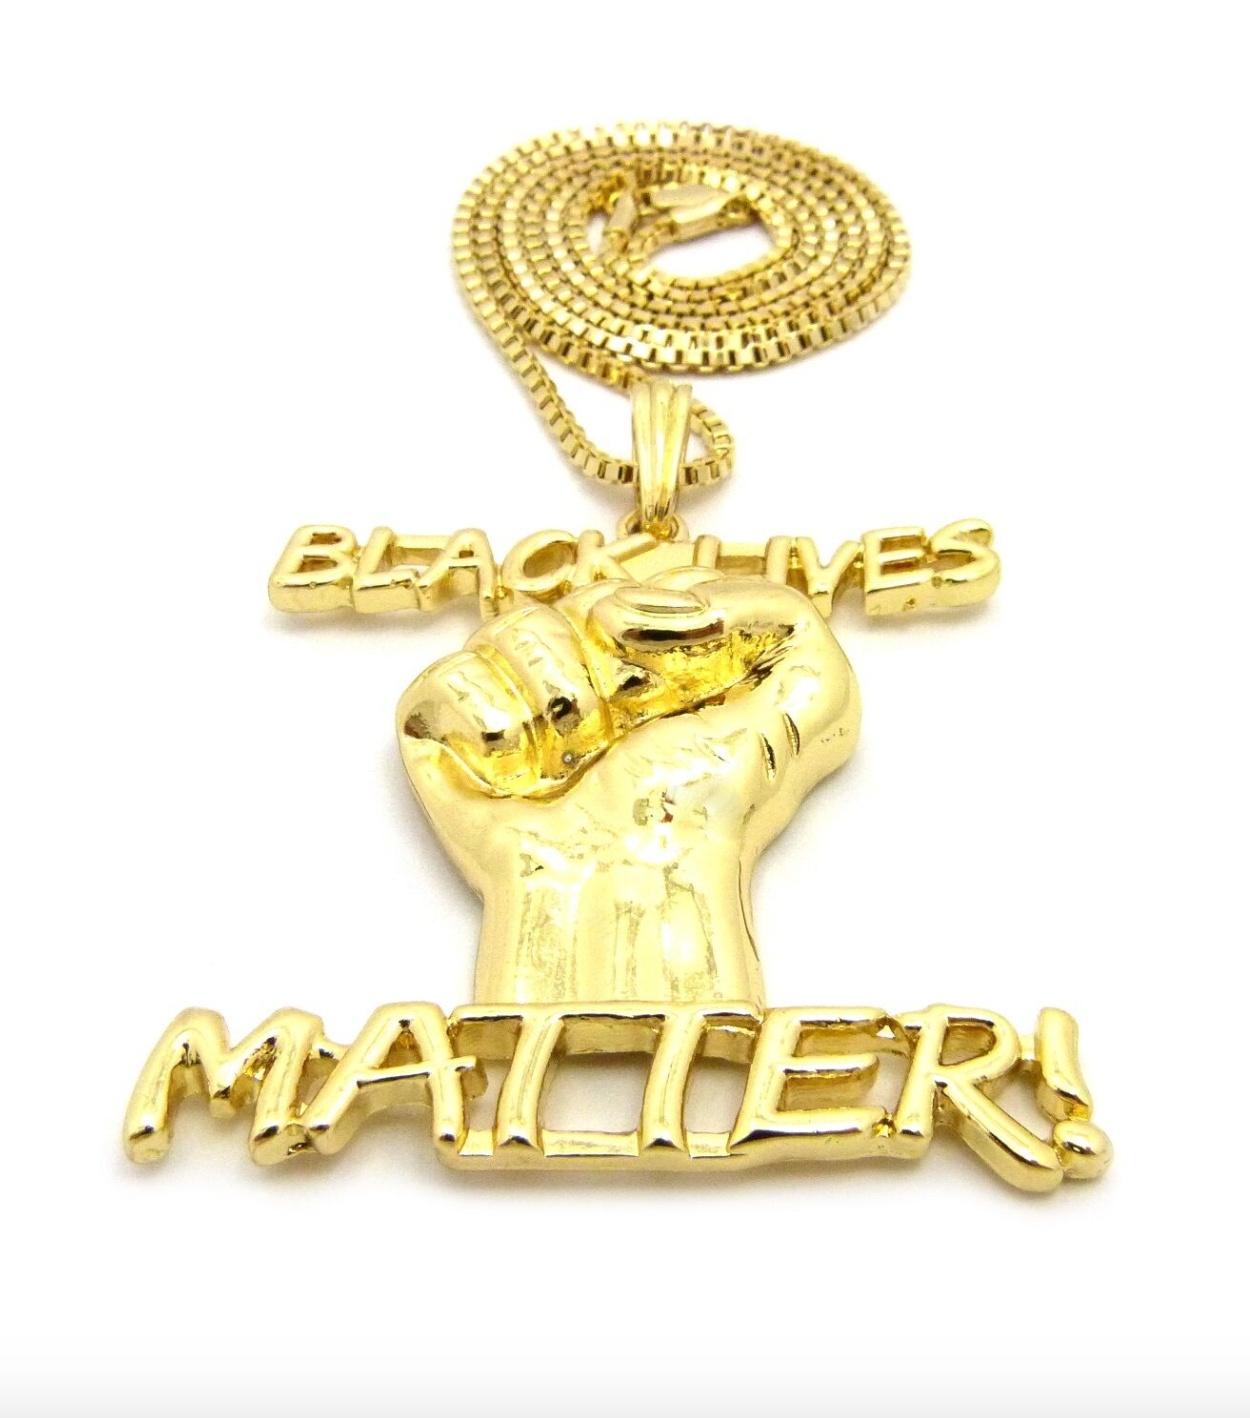 Black Lives Matter Necklace BLM Pendant Gold Tone Chain Hip Hop Black Proud Fist 24in.